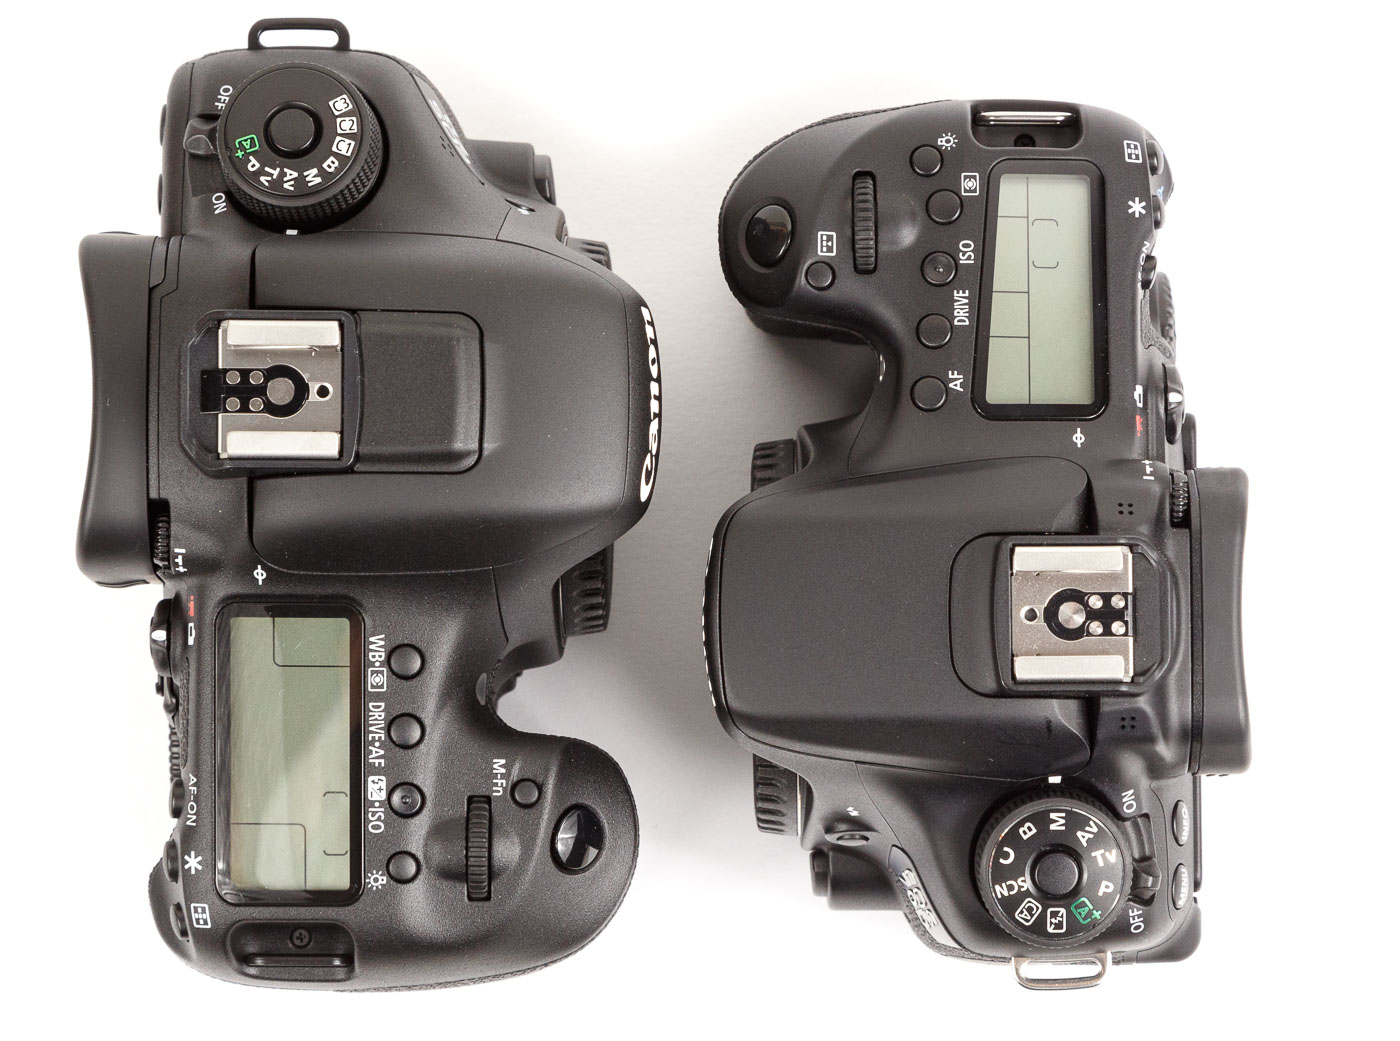 Canon EOS 7D Mark II Canon EOS 70D Body Gehäuse Vergleich Compa